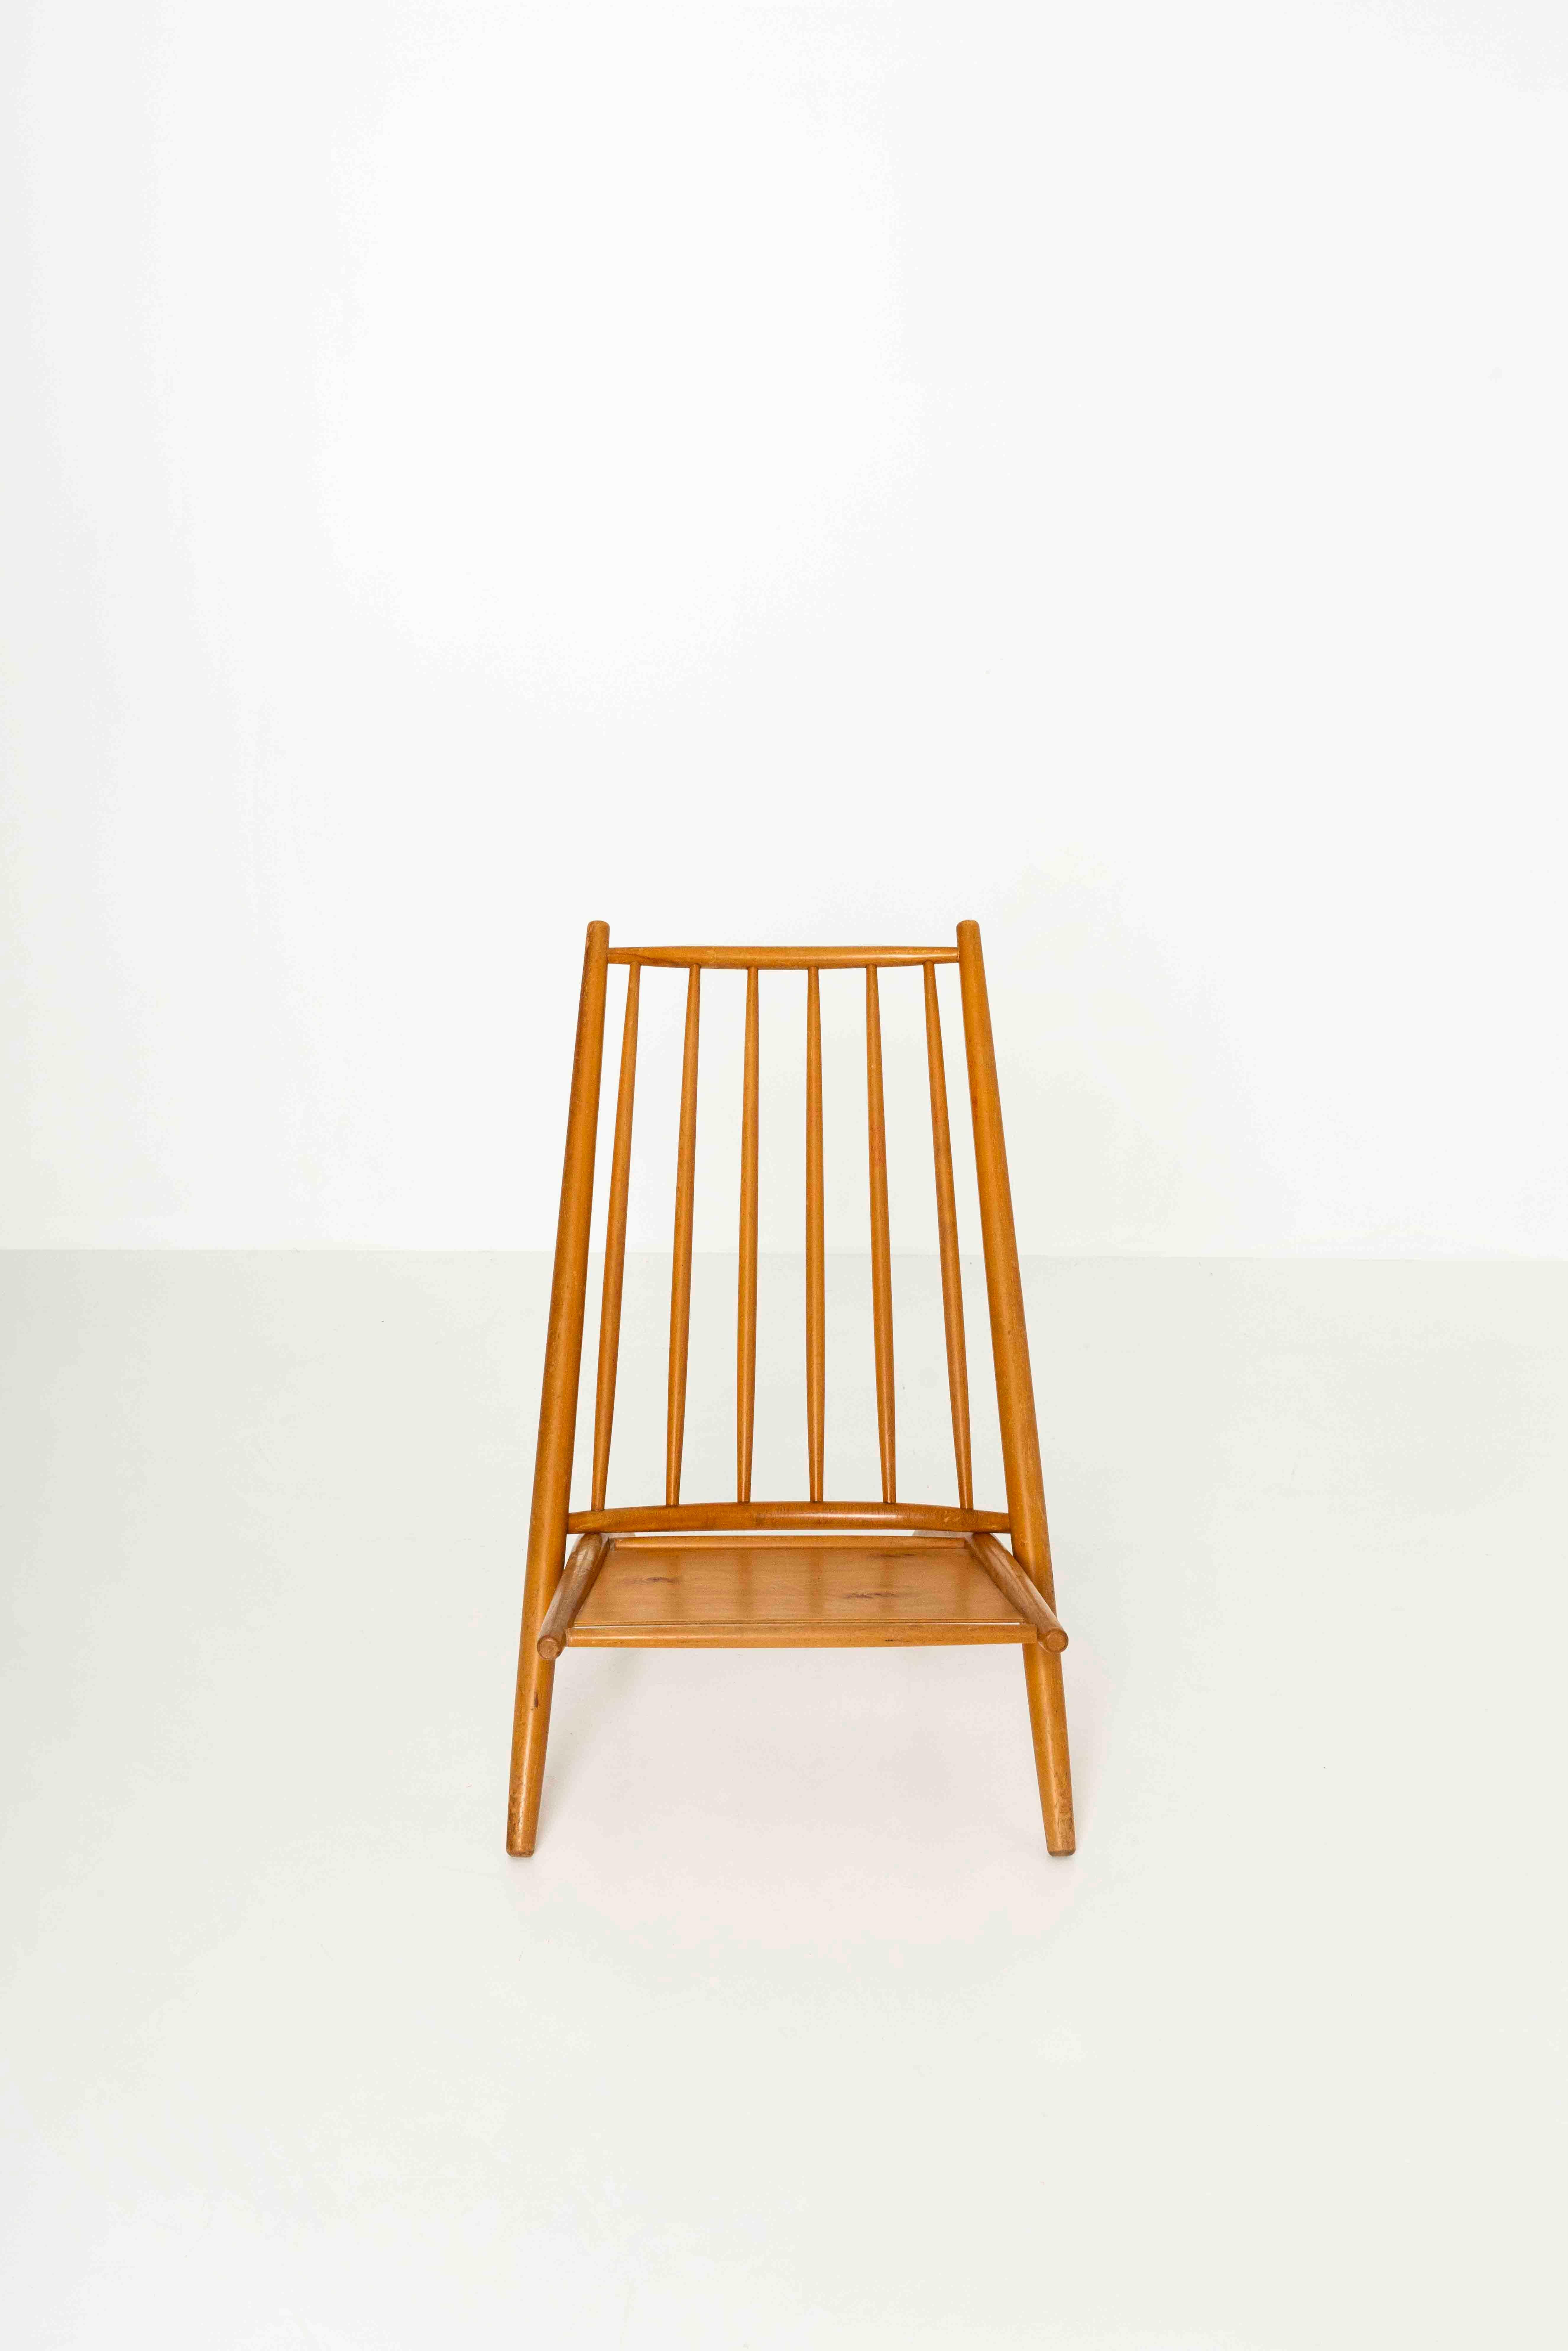 Congo Stuhl aus Birke von Ilmari Tapiovaara für Asko, Finnland, 1960er Jahre (Skandinavische Moderne) im Angebot